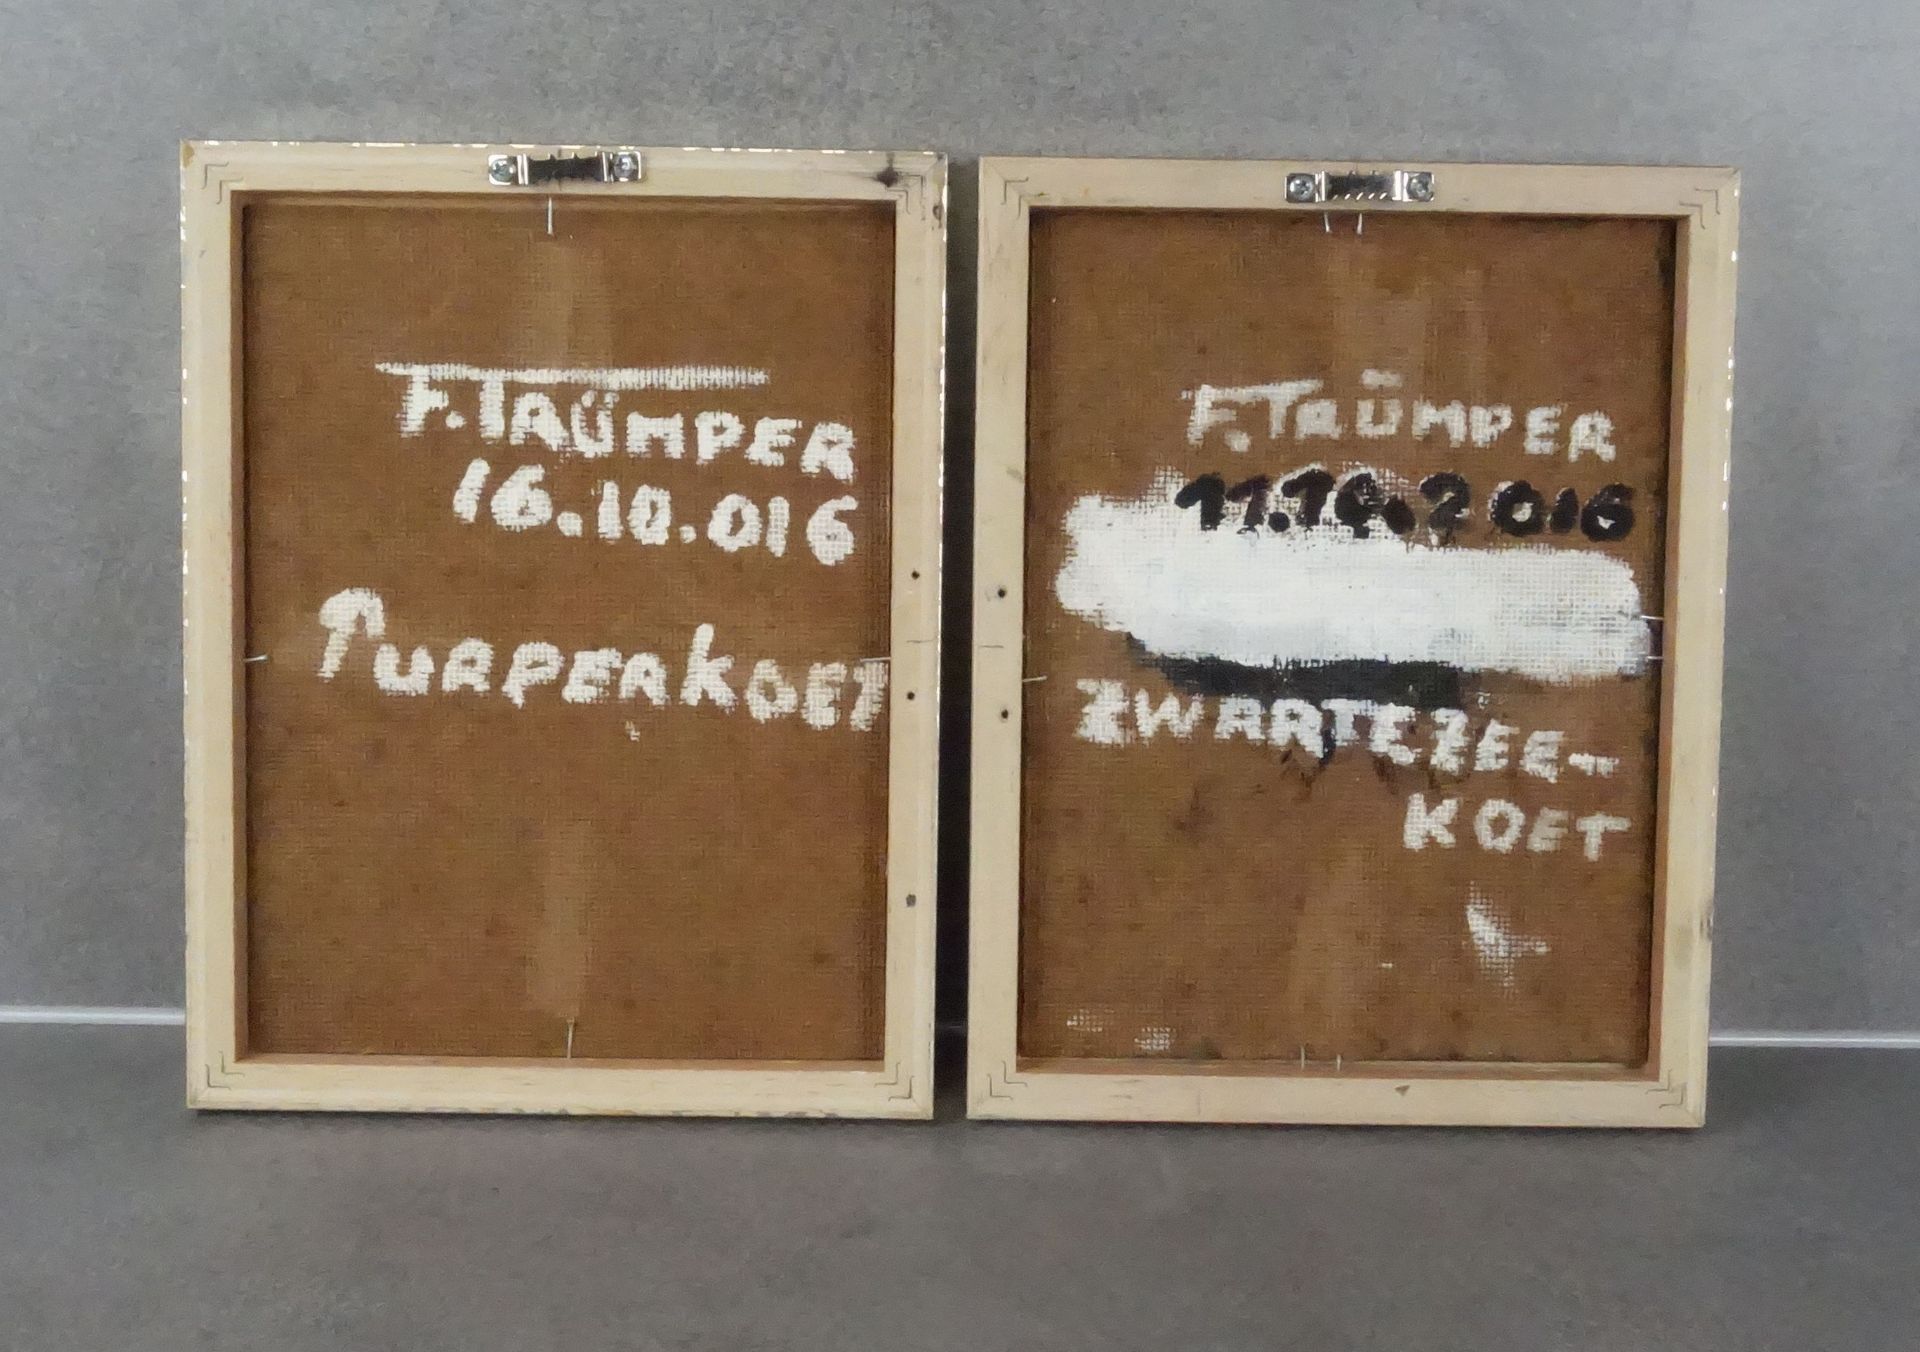 FRANZ TRÜMPER - TWO PAINTINGS: "GRYLLTEISTE" und "PURPURHUHN" - Image 2 of 2